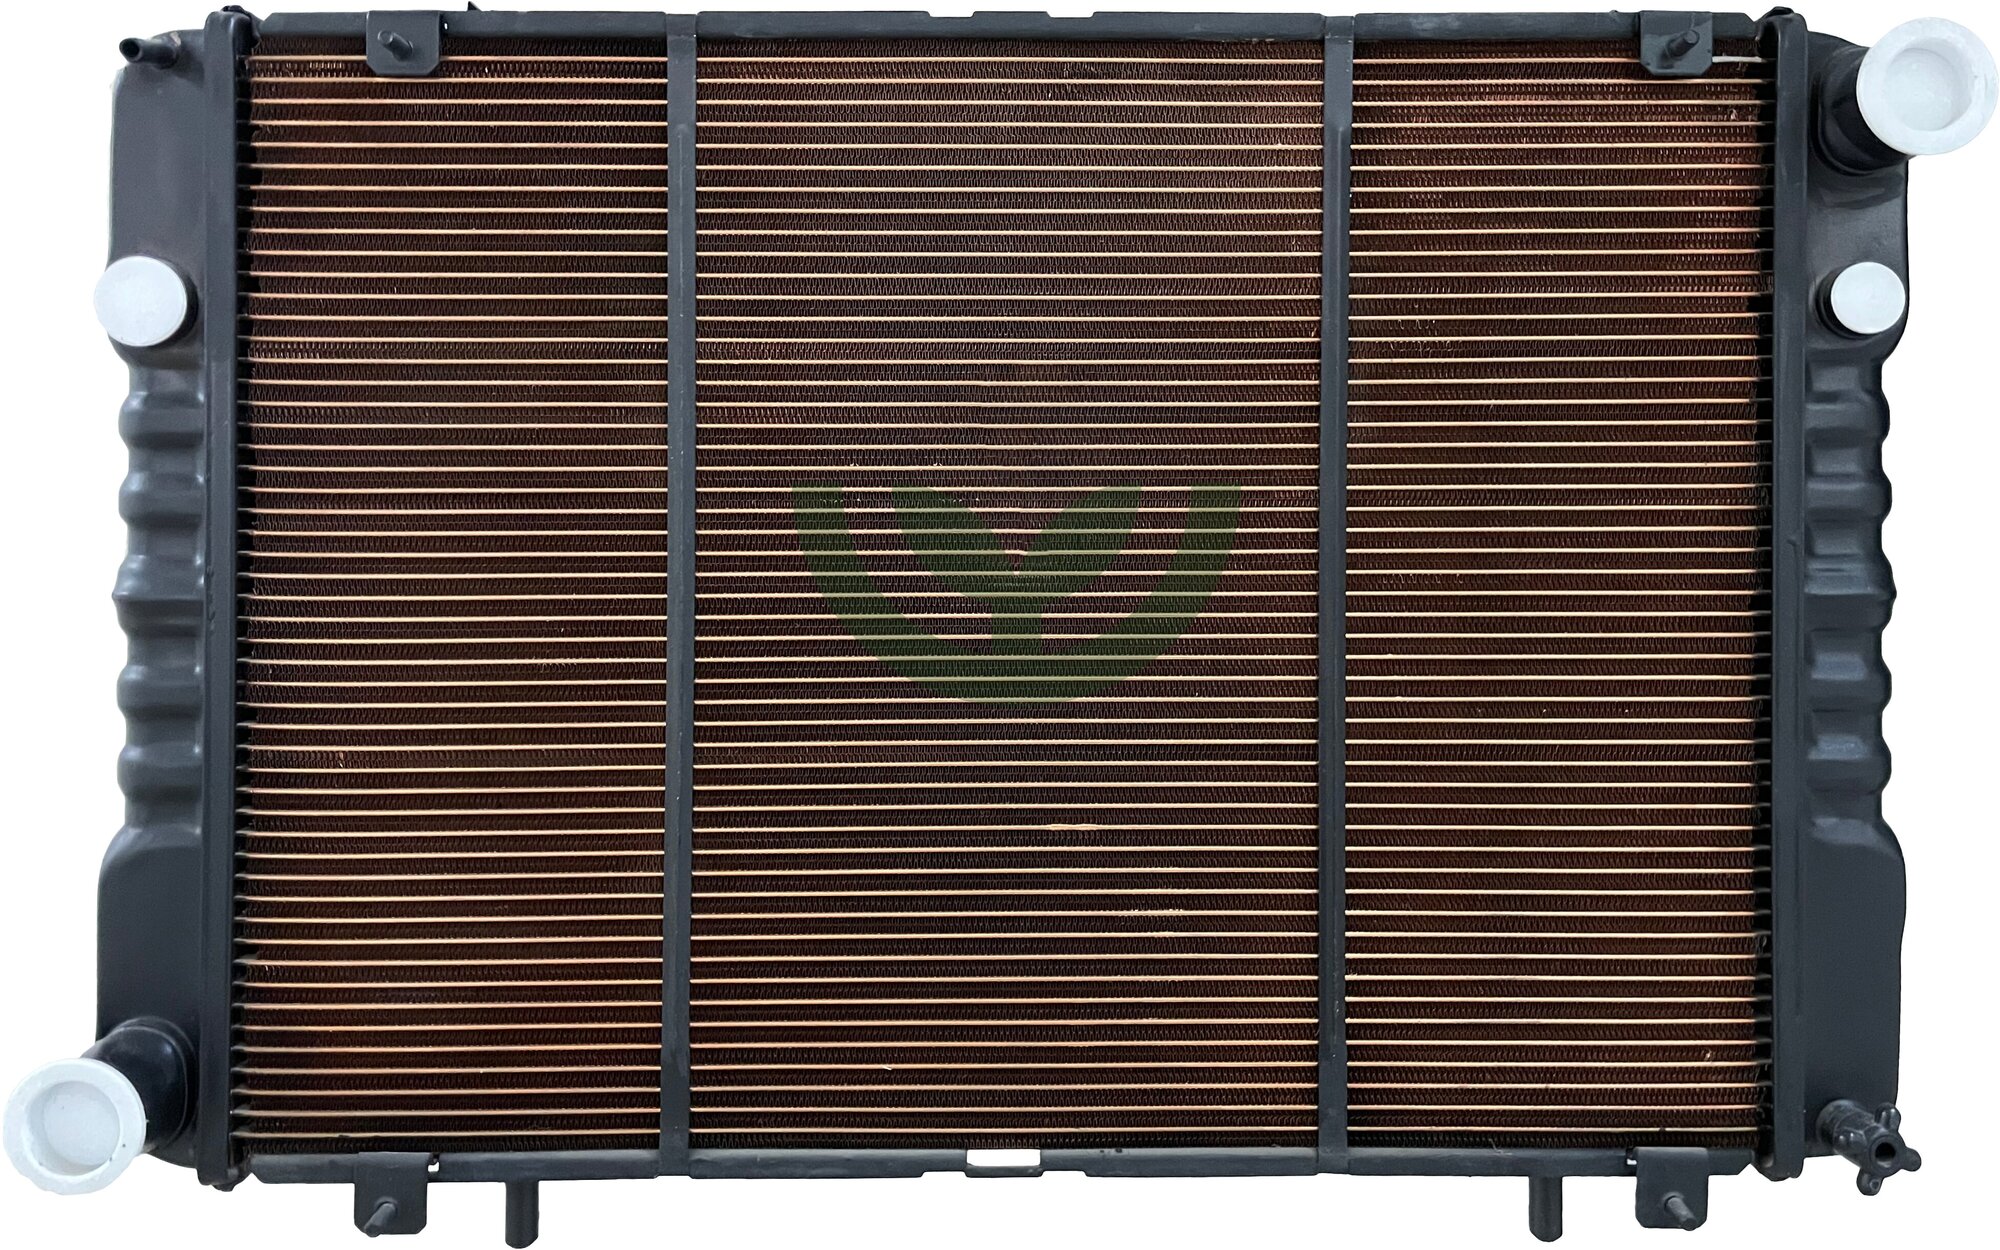 Радиатор охлаждения для а/м ГАЗ 3302 медный 3-х рядный Оренбургский радиатор арт. 3302.1301.010-33